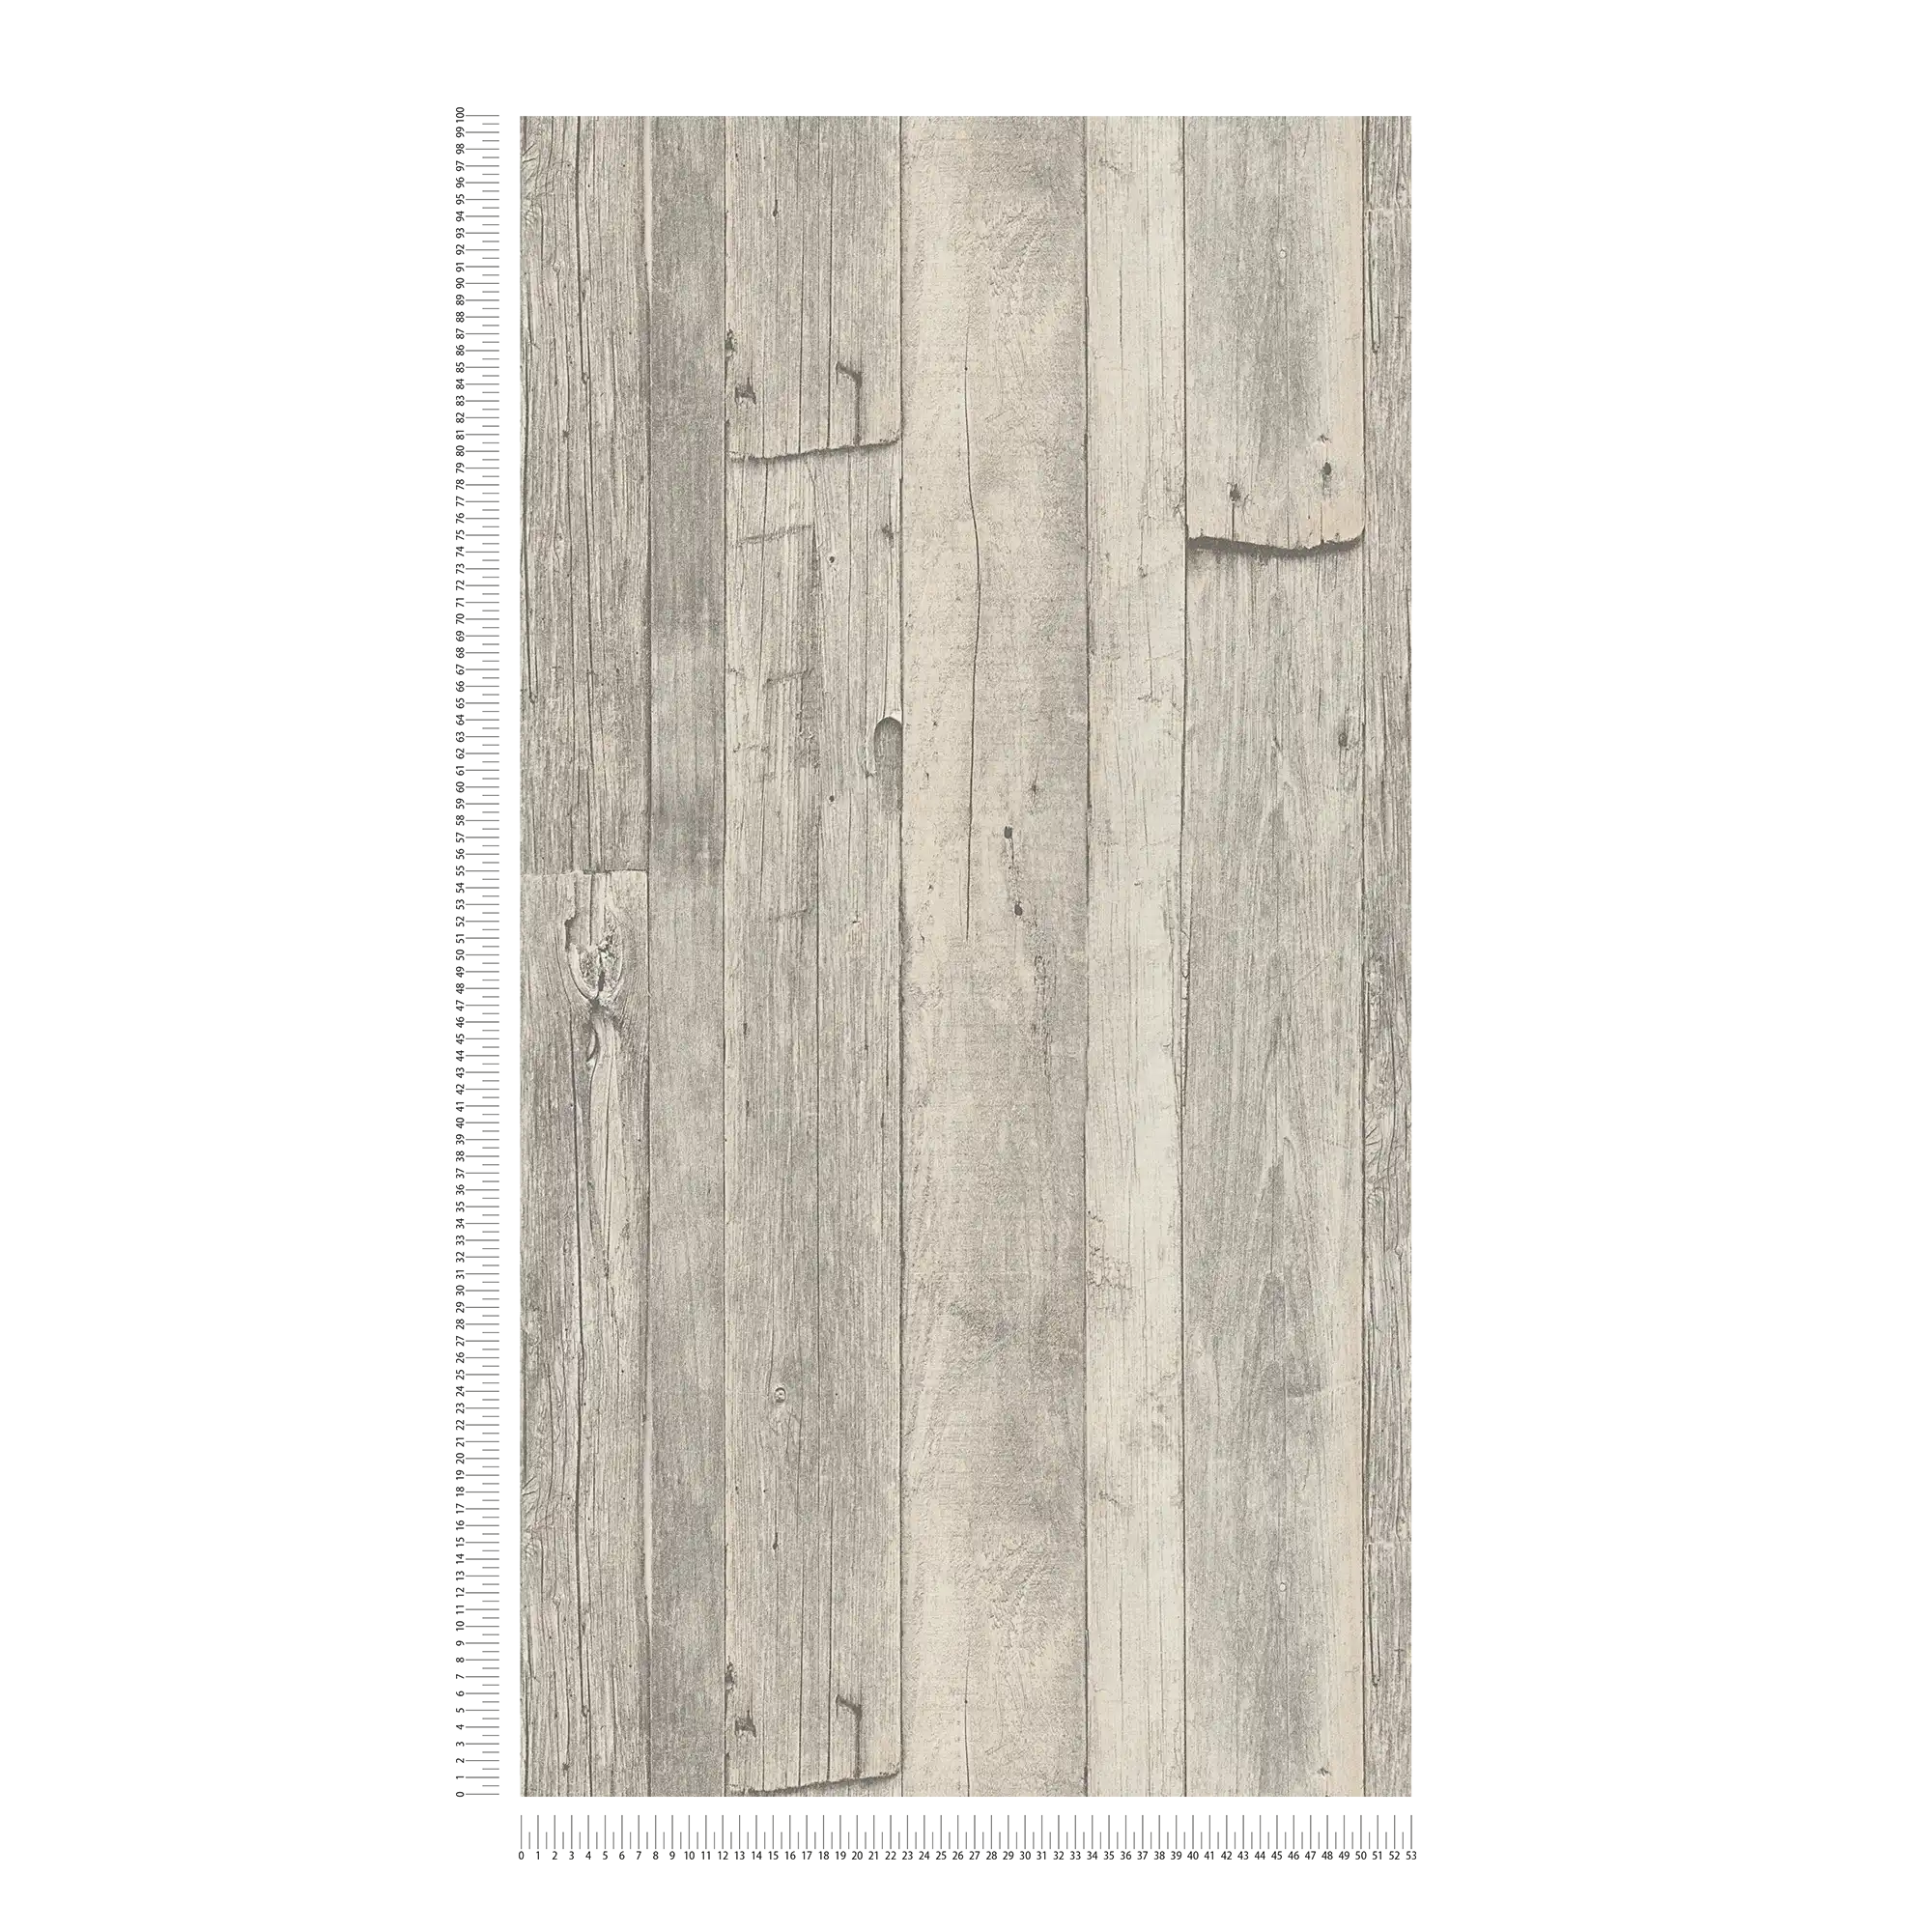             Houten behang met planken & nerven in vintage design - grijs, beige, crème
        